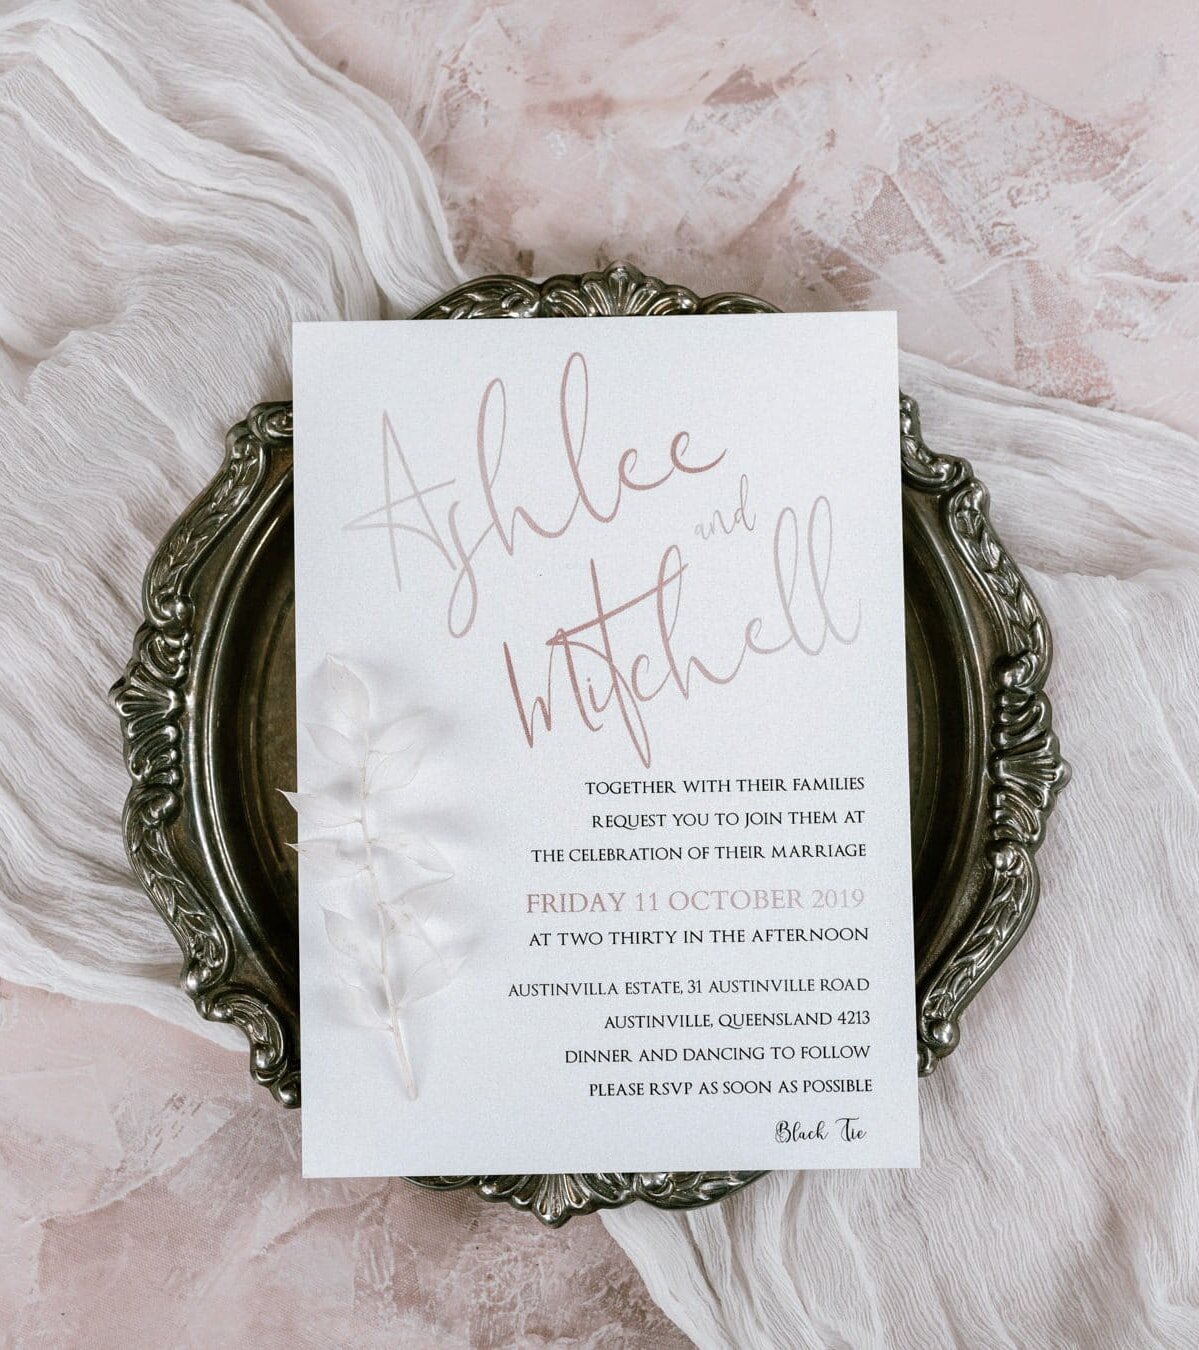 Austinvilla Estate wedding invitation